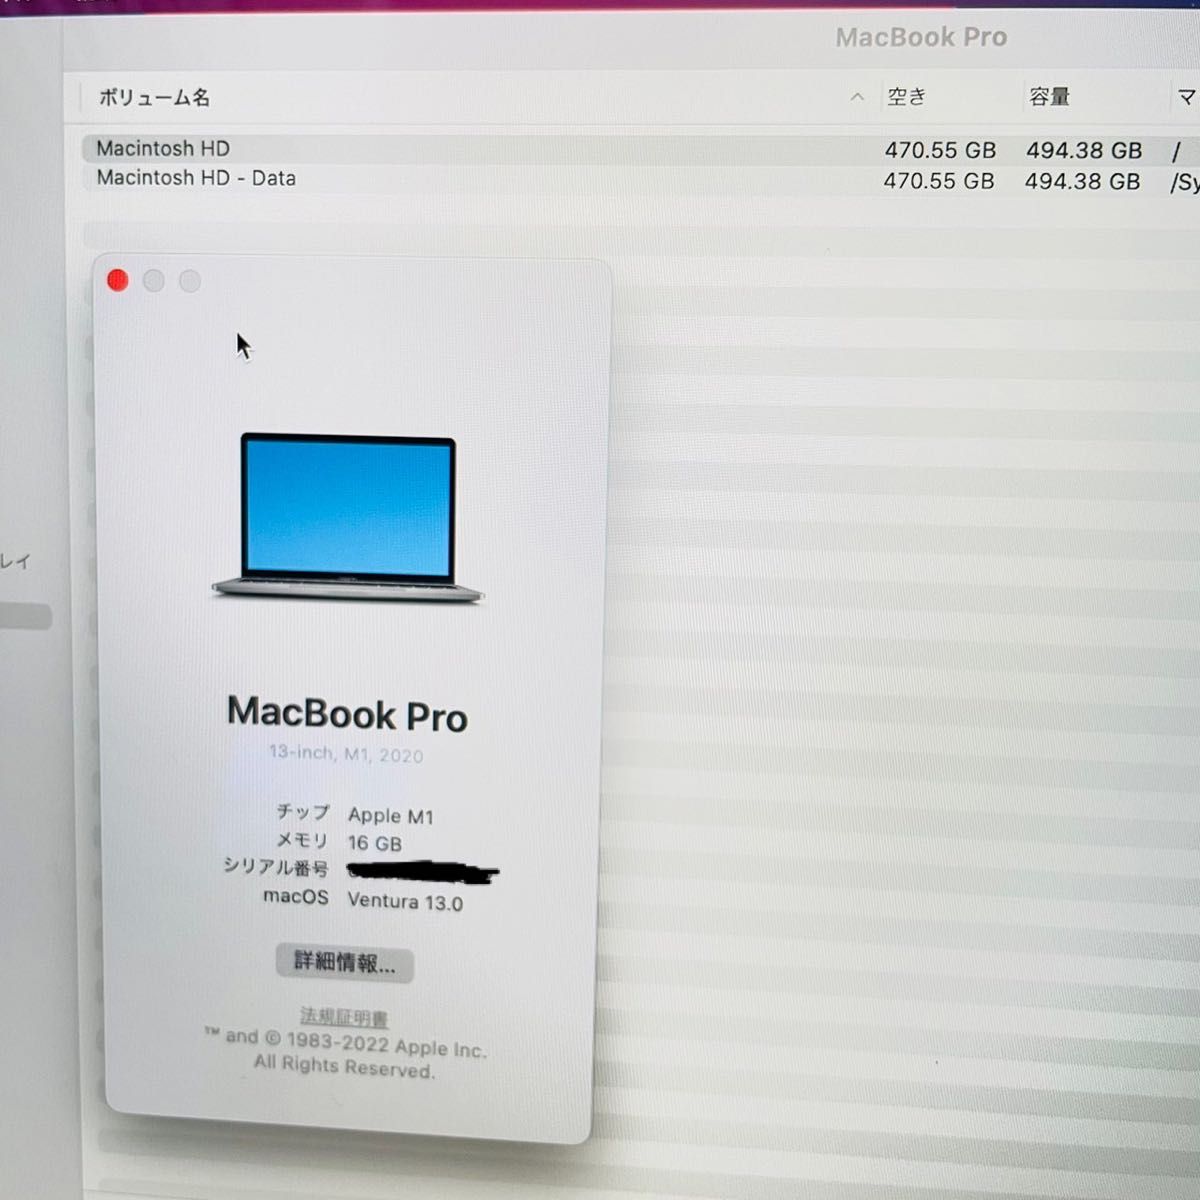 MacBook Pro 2020 M1 512GB/16GB